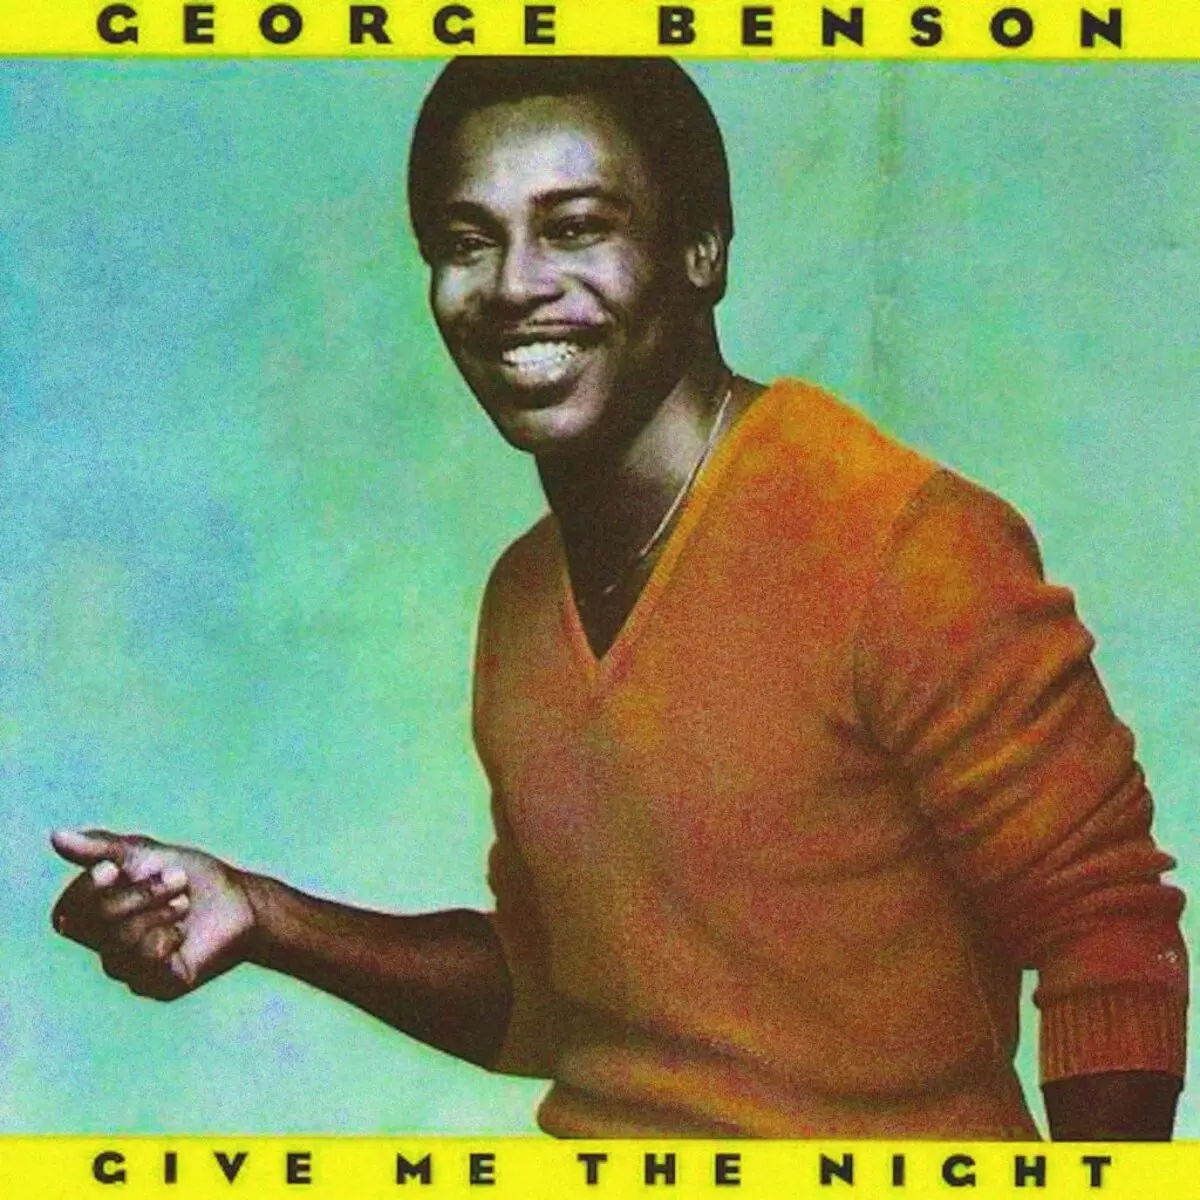 Mpa ijoro (1980) - George Benson - Byose bijyanye na alubumu ...